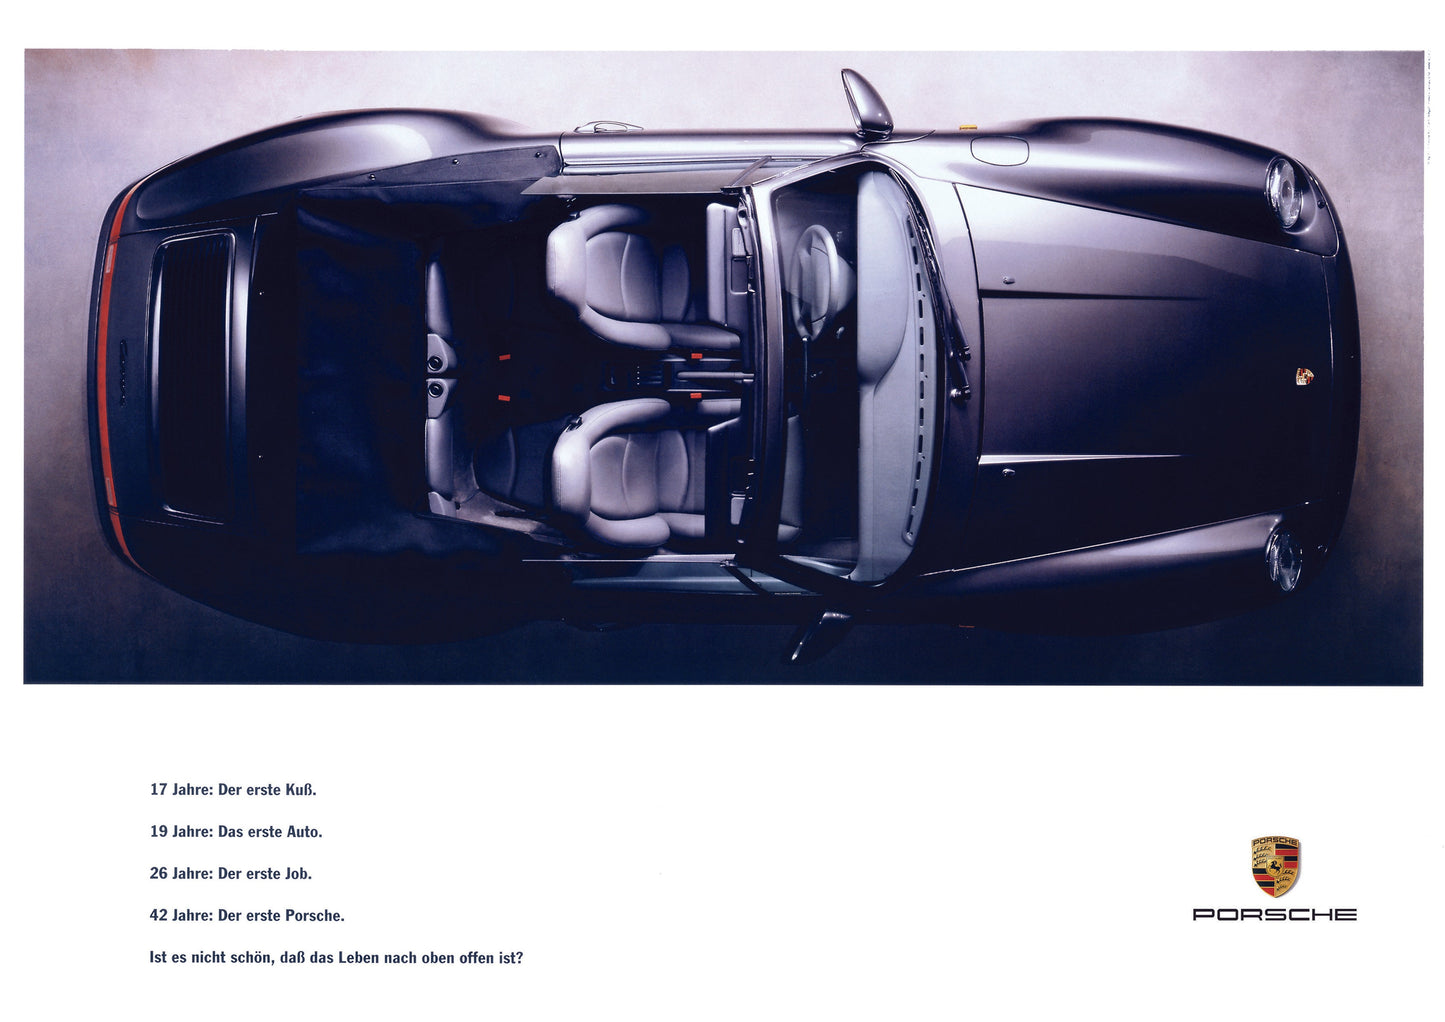 Les 2 livres " Une vie en Range Rover" + "Une vie en Porsche 911" + 10 posters A4 et livraison gratuite ( utilisez le code promo SHIP )